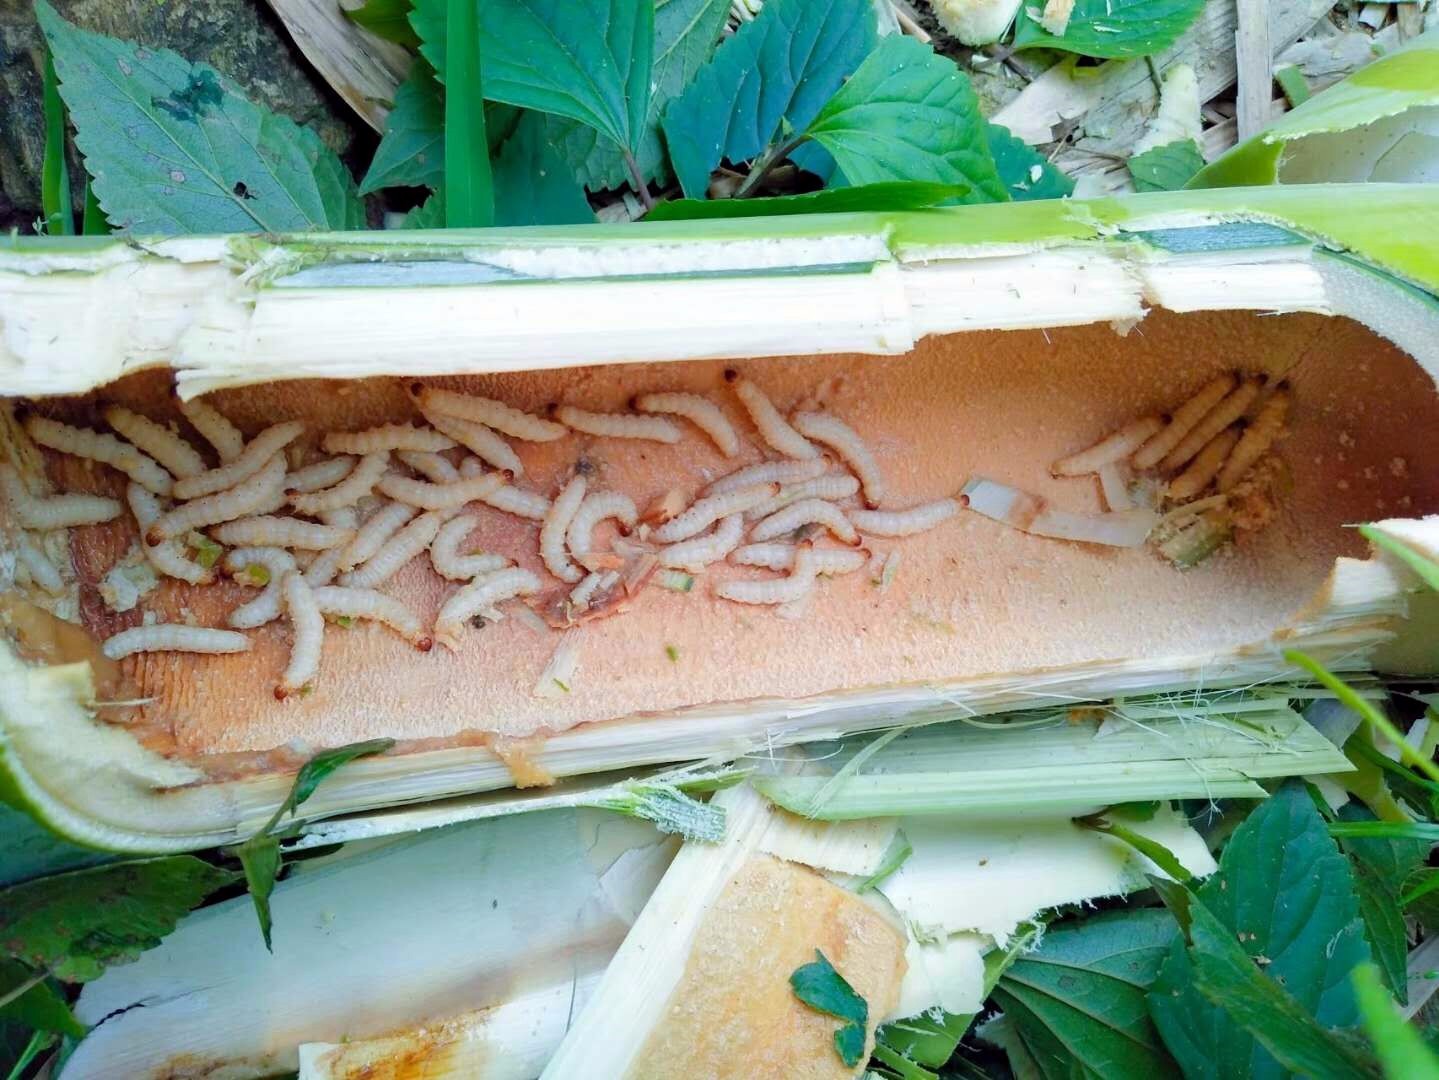 逆天虫子长62.4厘米 中国现世界最长竹节虫 - 封面新闻